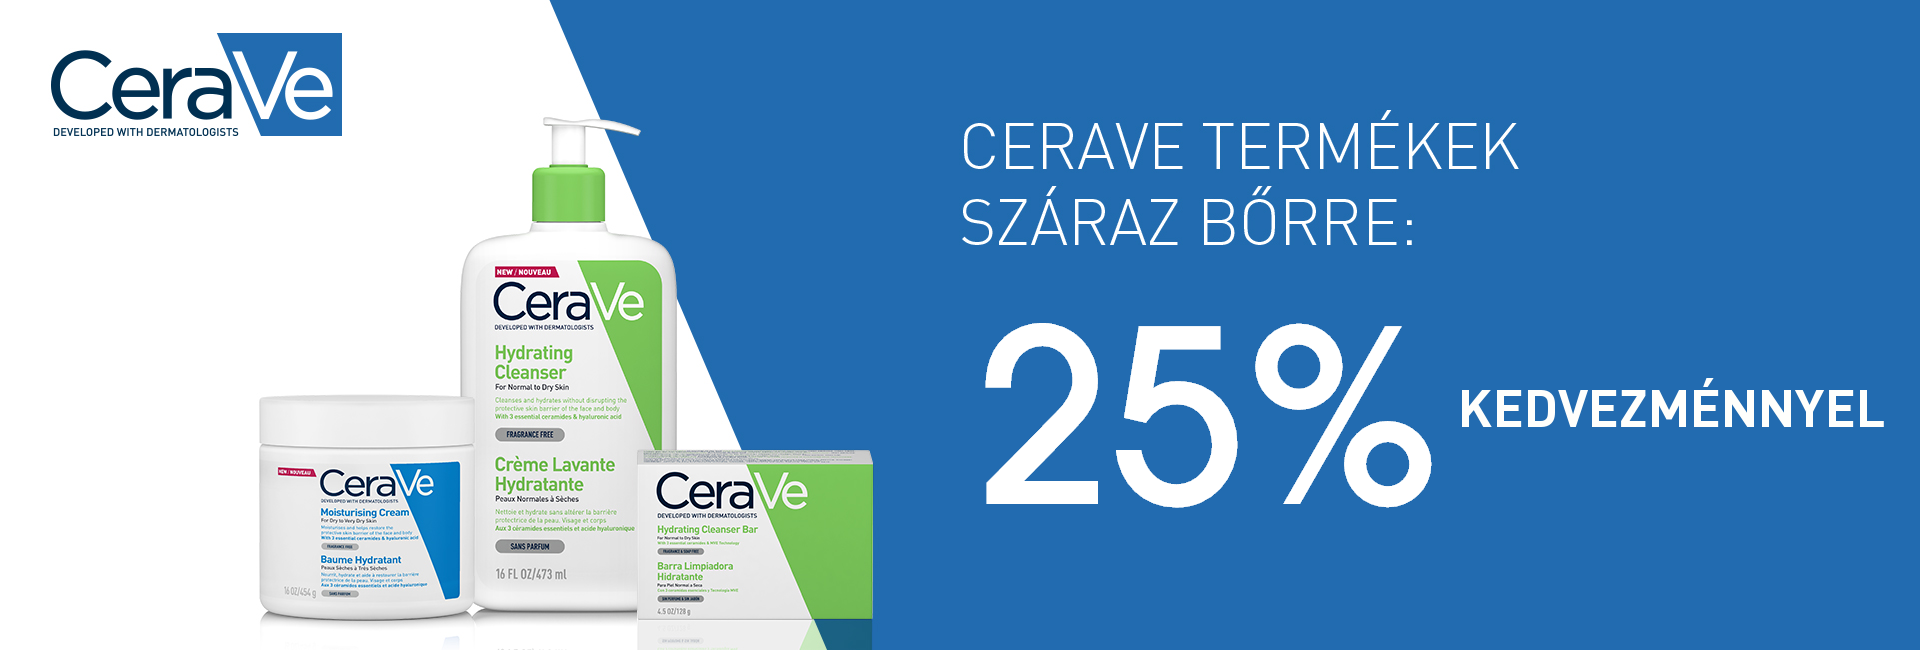 2020. pktóber 19-25. között minden CeraVe terméket 25% kedvezménnyel kínálunk! 